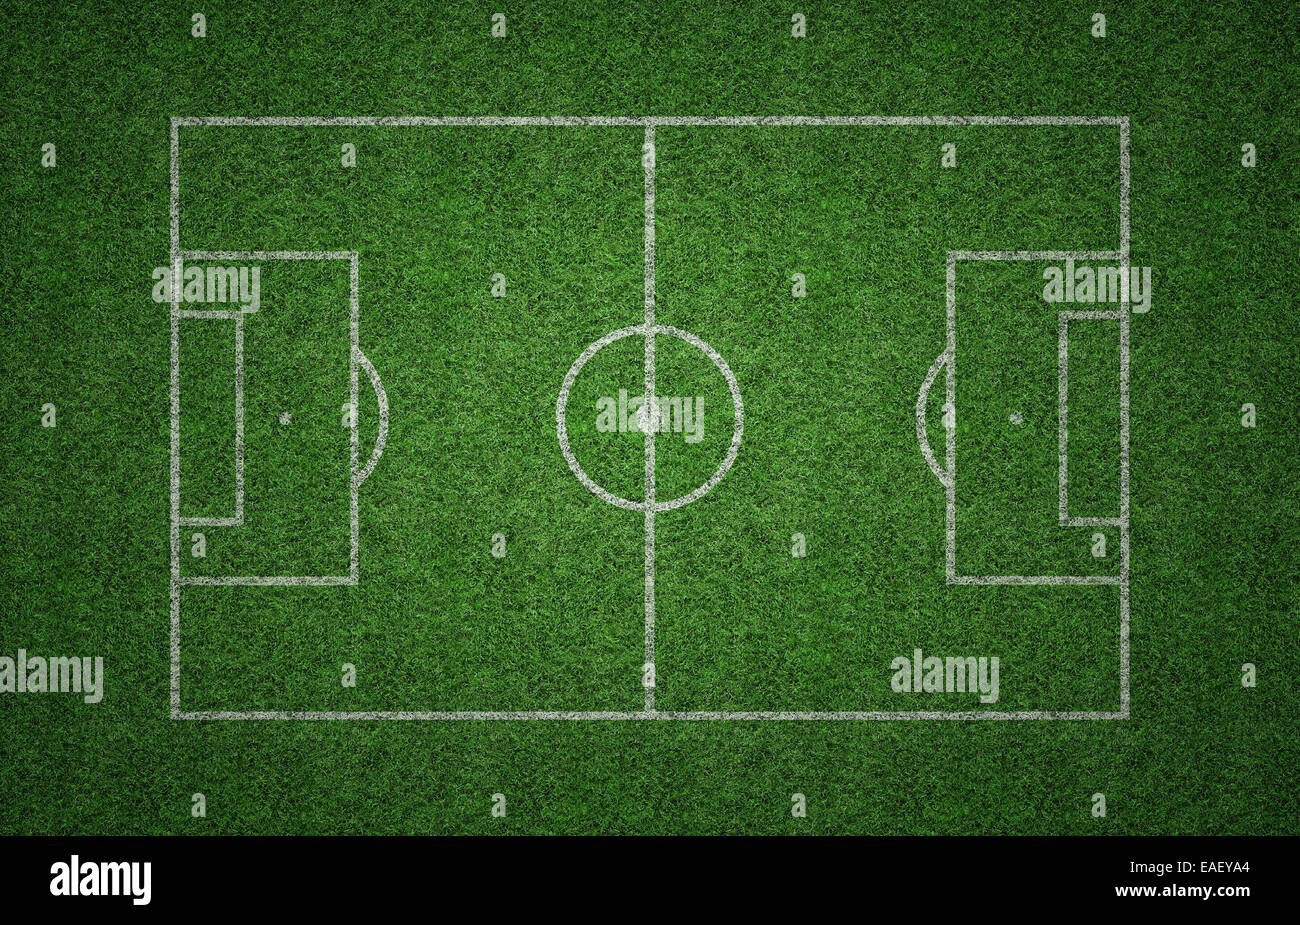 Grünen Rasen-Fußballplatz mit weißen Linien markieren die Tonhöhe. Stockfoto